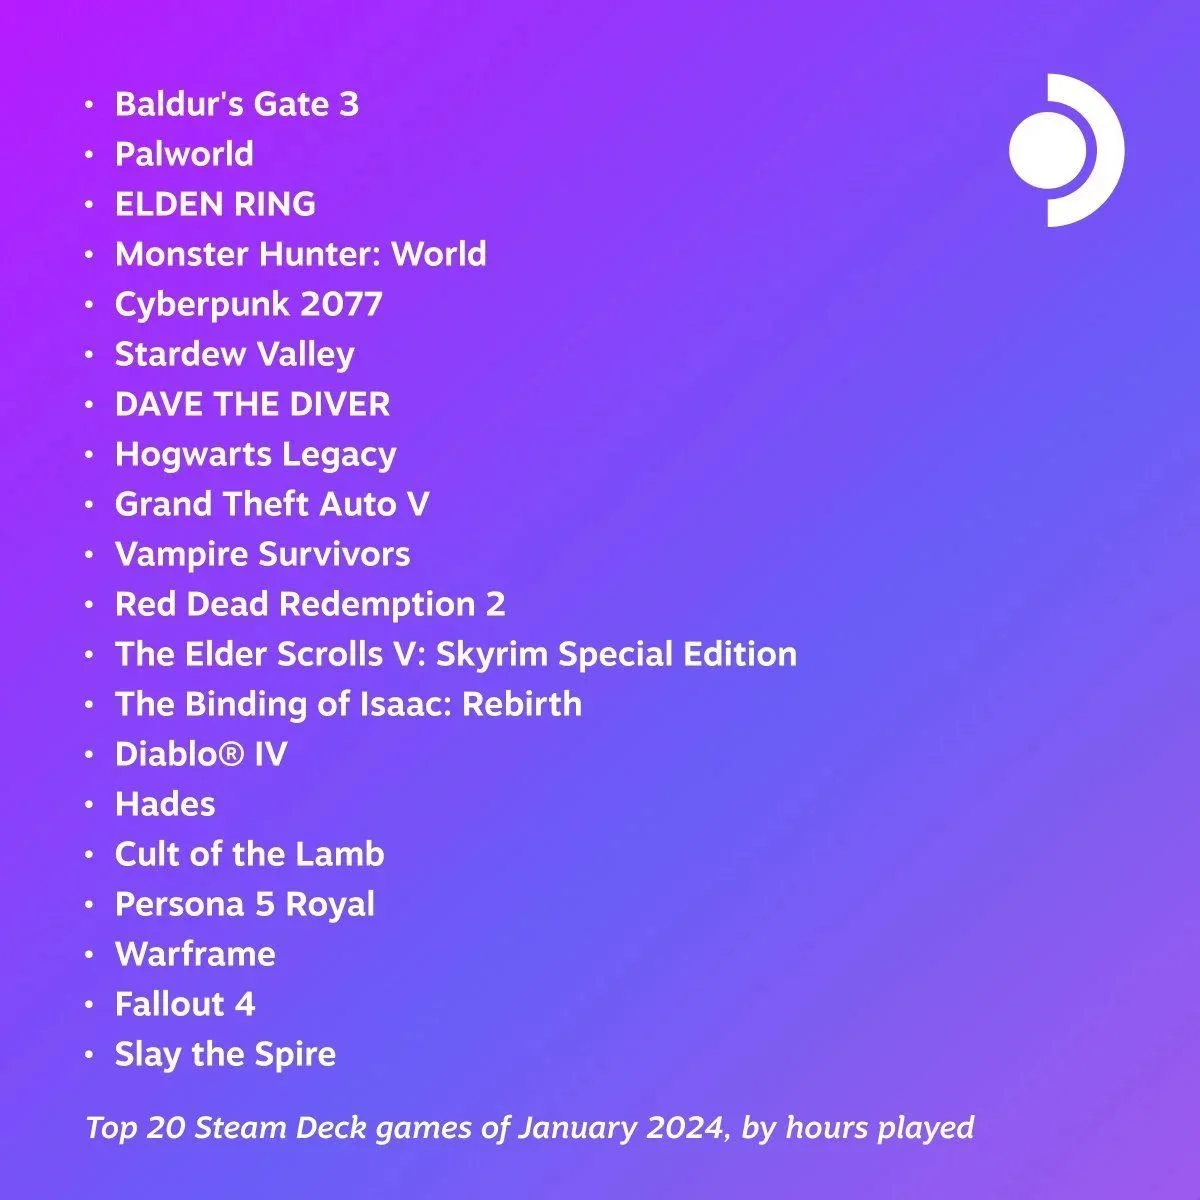 Baldurs Gate 3 и Palworld стали самым популярными играми на Steam Deck в январе - фото 1